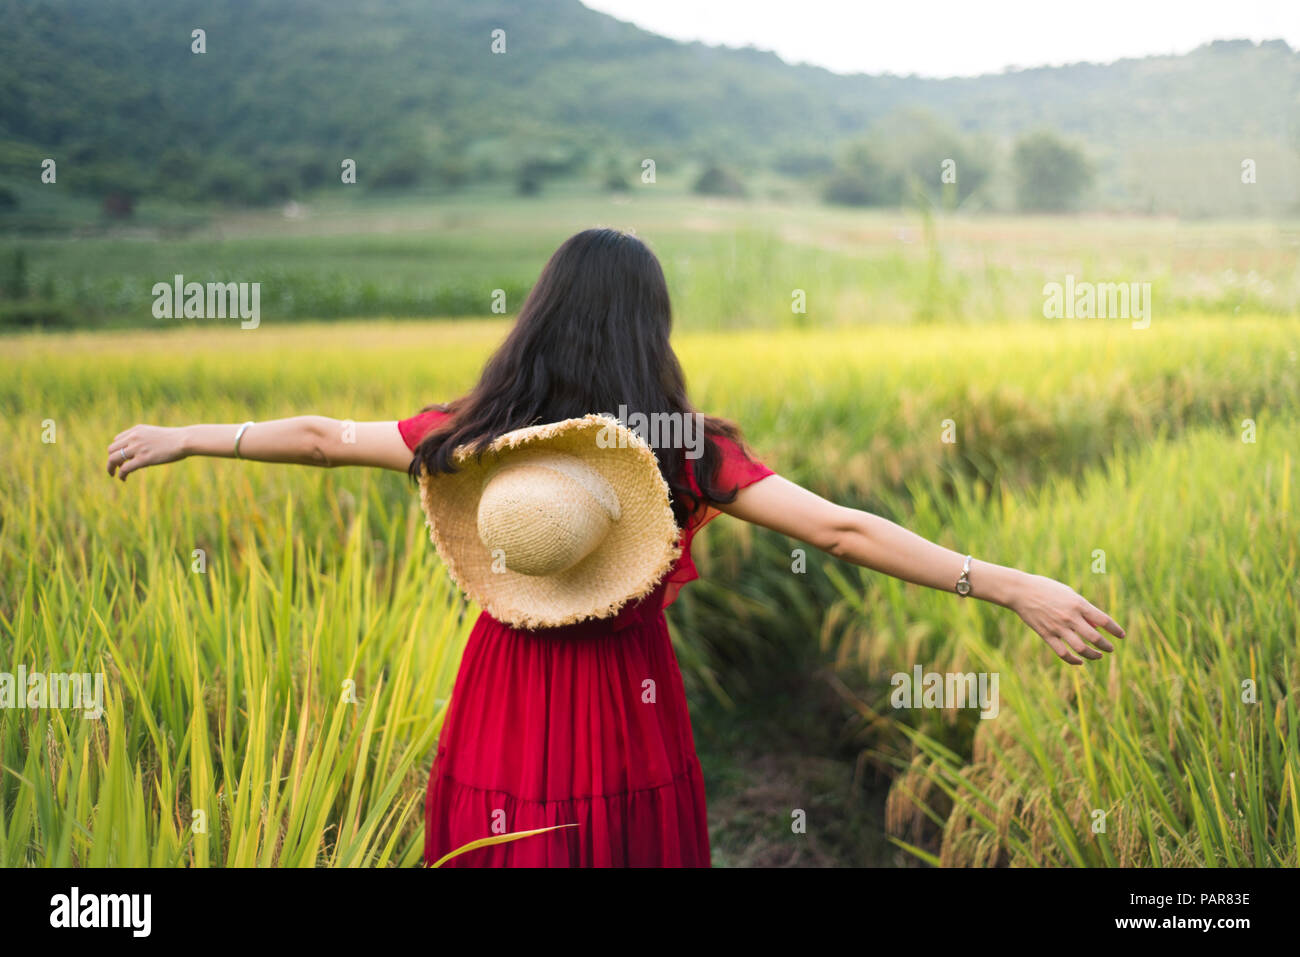 Fille qui marche dans un champ de riz wearing red dress holding un chapeau Banque D'Images